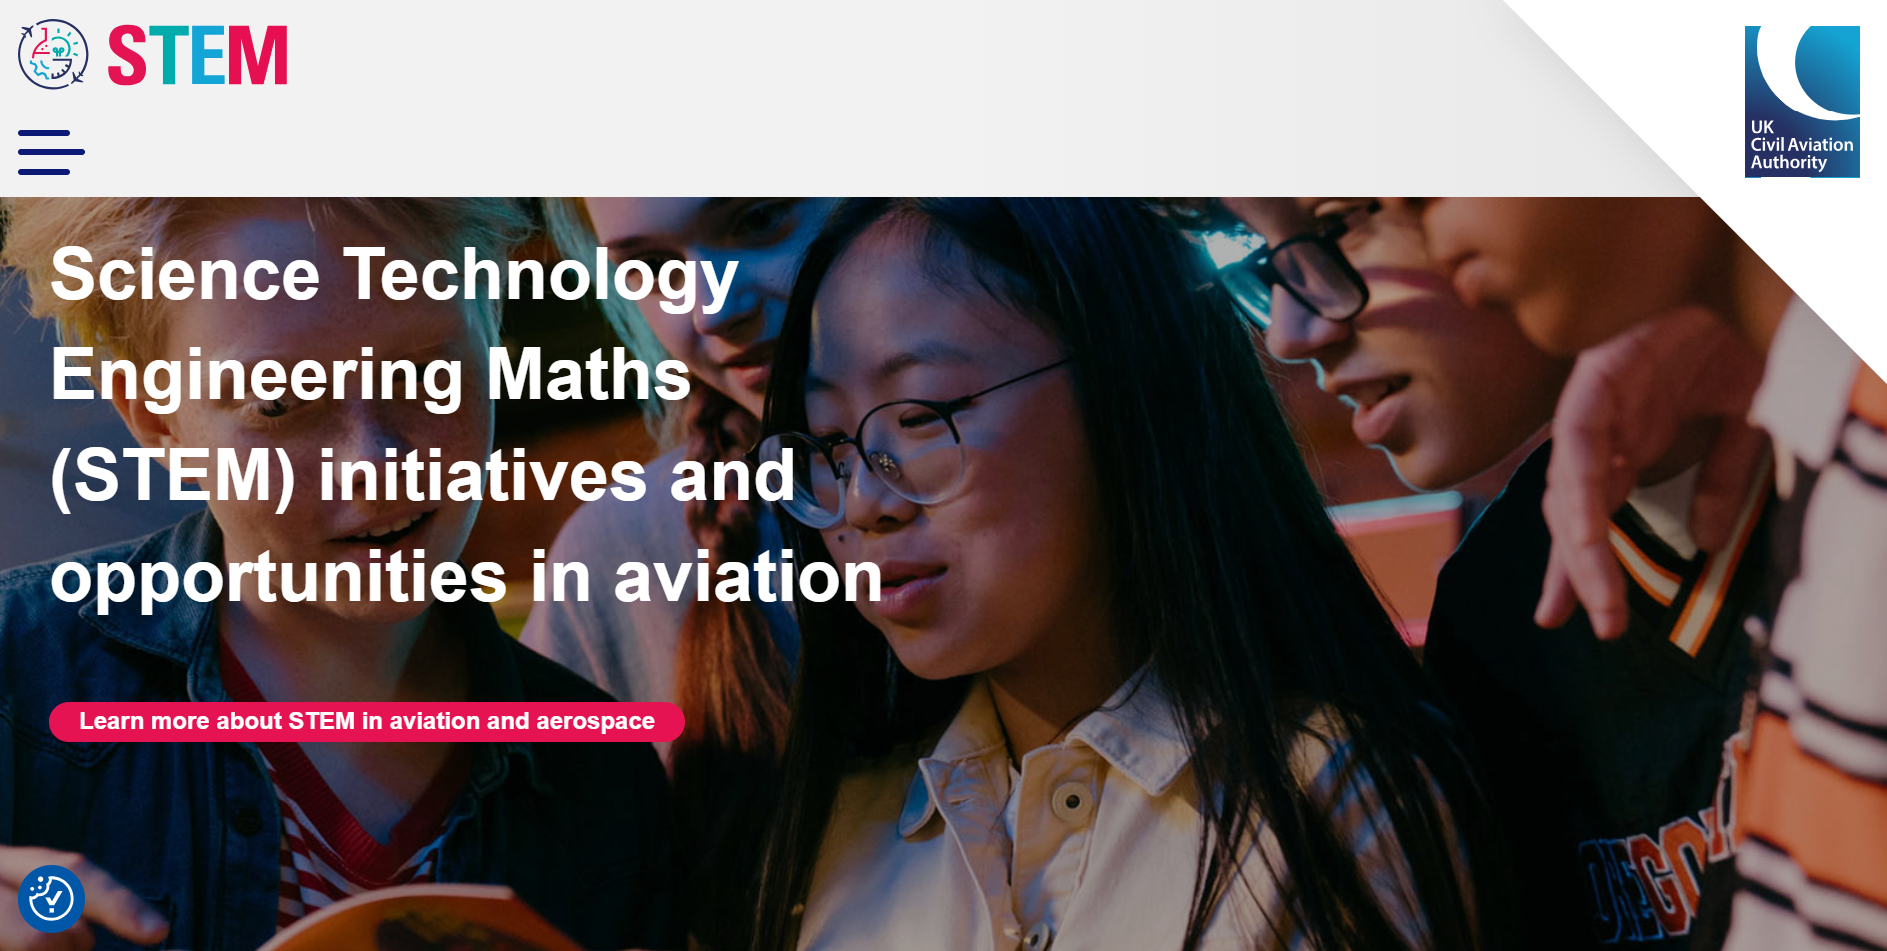 Image of STEM website homepage